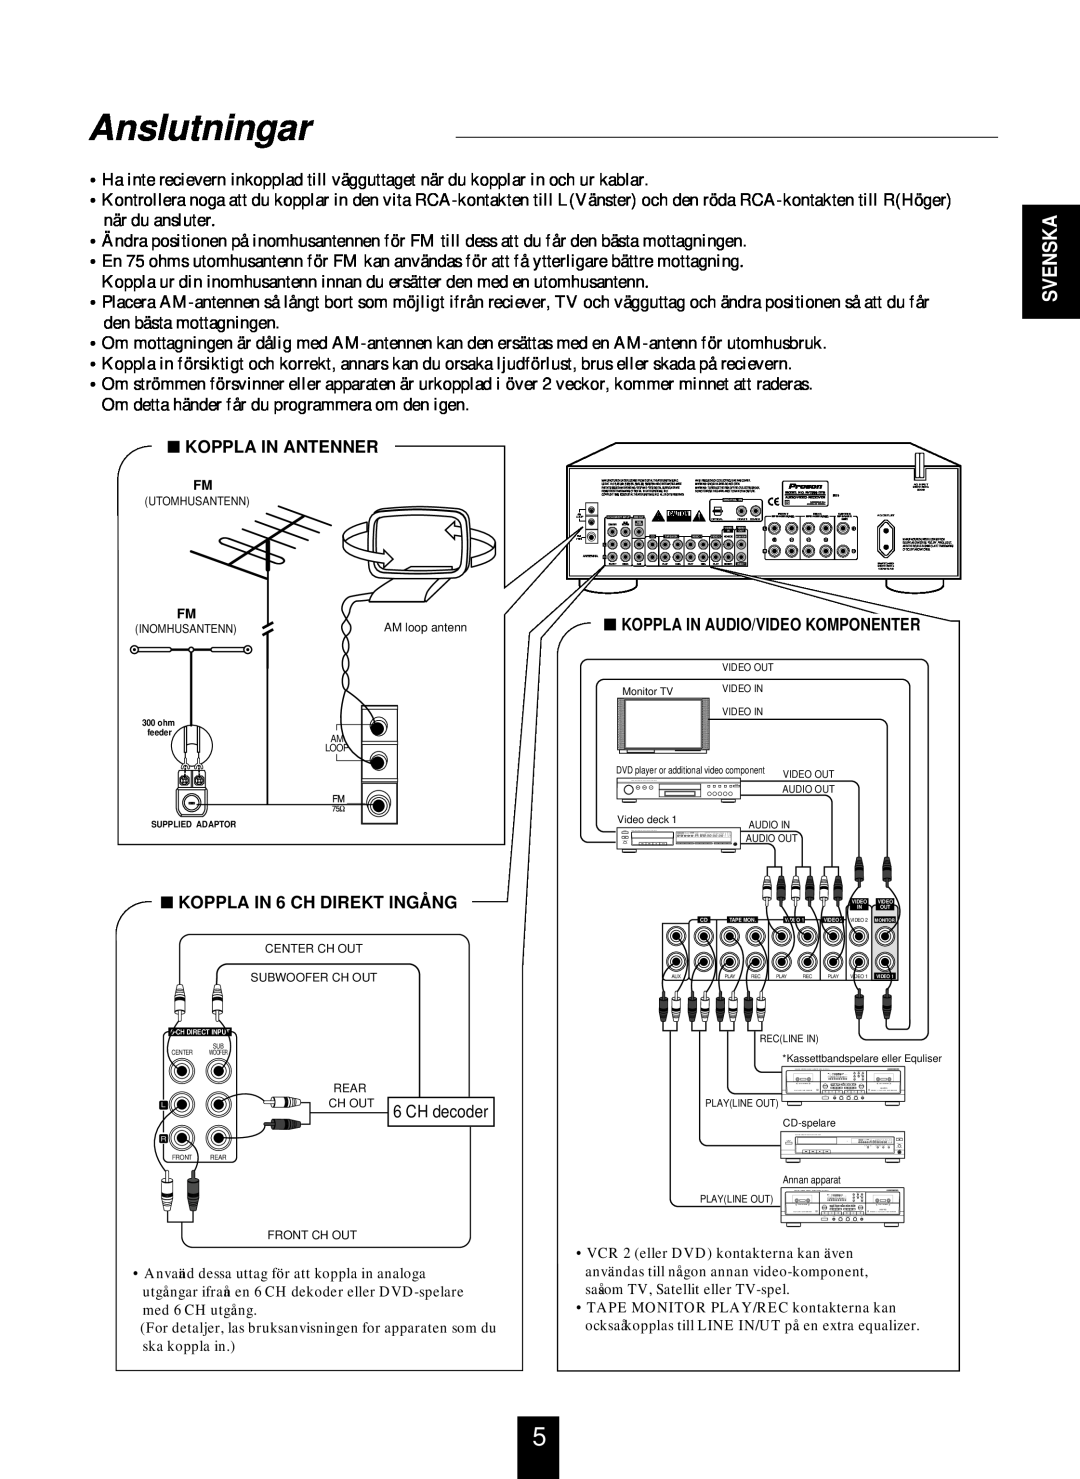 Proson RV-2300DTS manual Anslutningar, Svenska, Koppla In Antenner, Koppla In Audio/Video Komponenter 